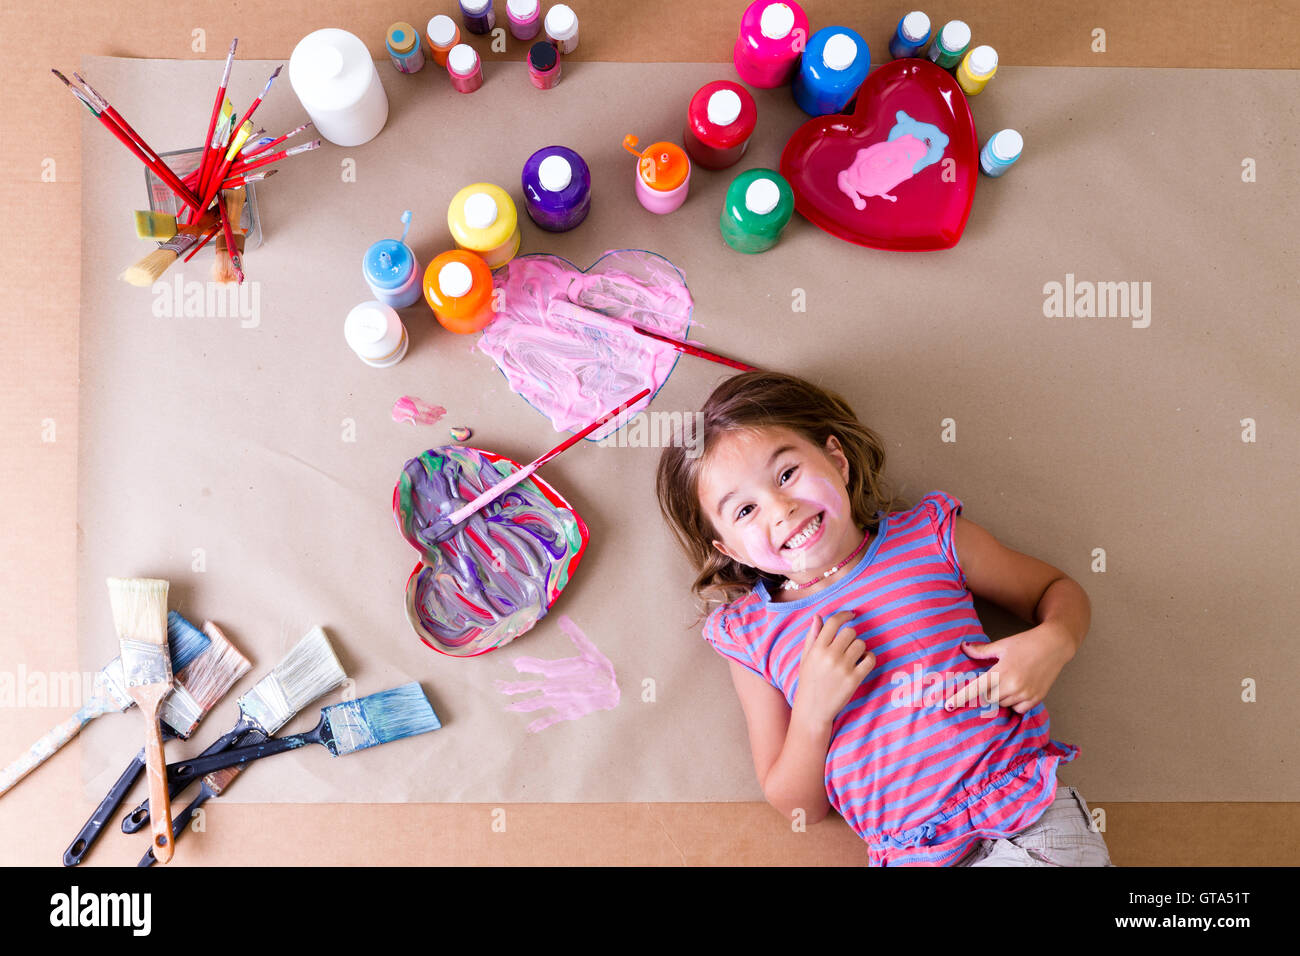 Glücklich freche kleine Mädchen Künstler mit ihrer Kunst liefert liegen umgeben von bunten Gläser Farbe, Pinsel und hübschen Herz desig Stockfoto